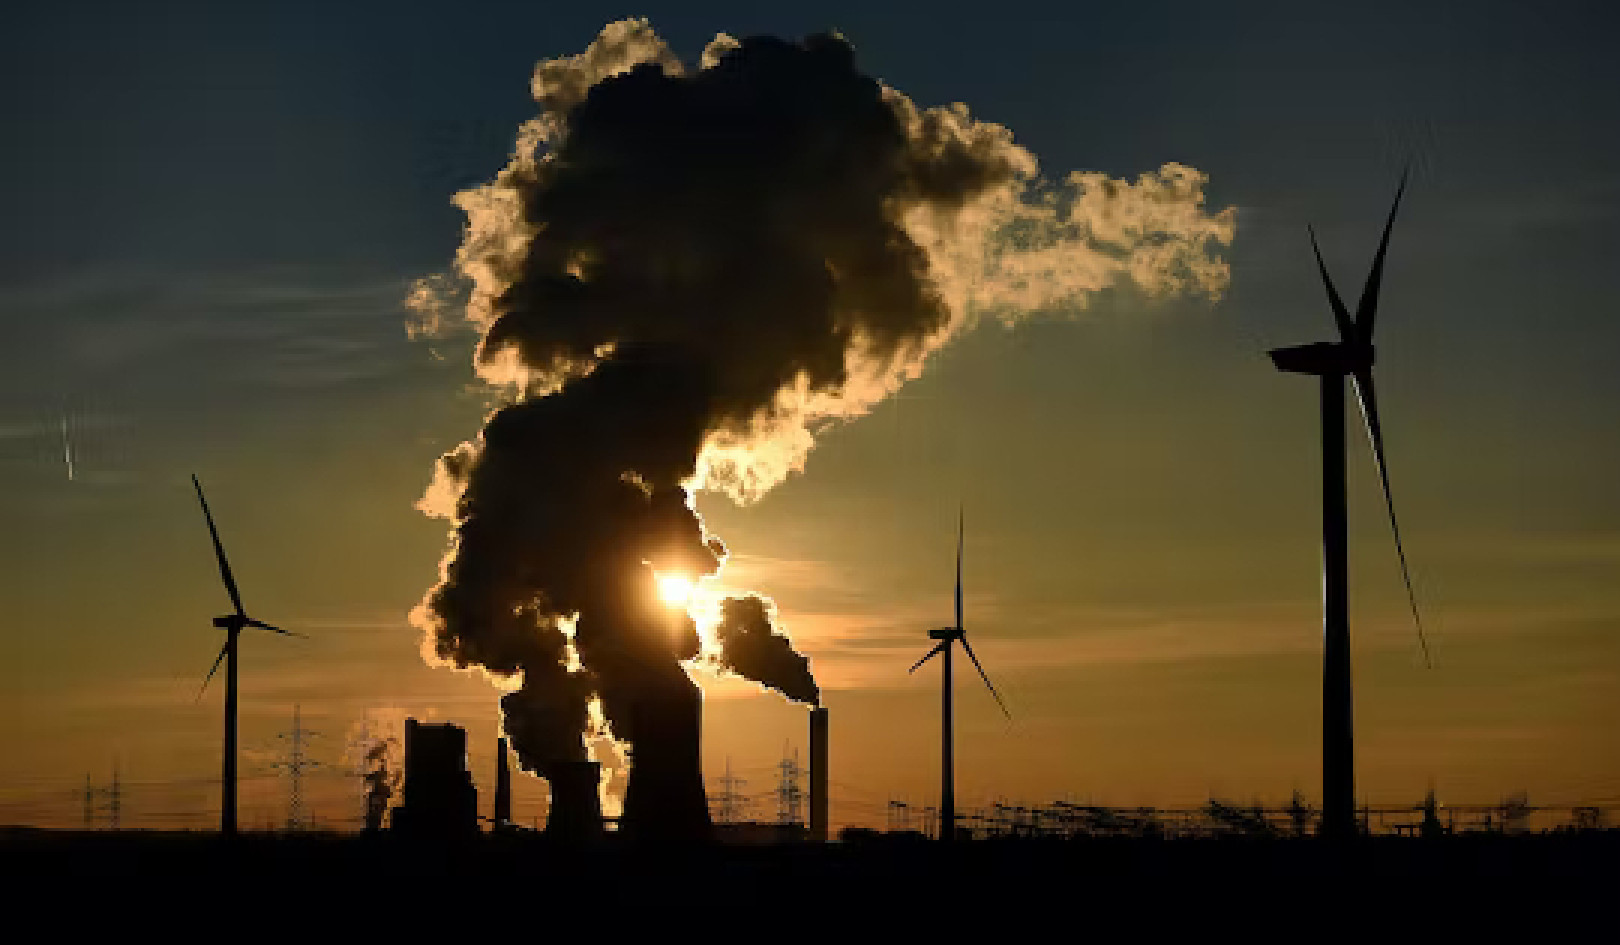 כיצד מנהיגי אנרגיה מדמיינים מאבק בשינויי אקלים בעתיד